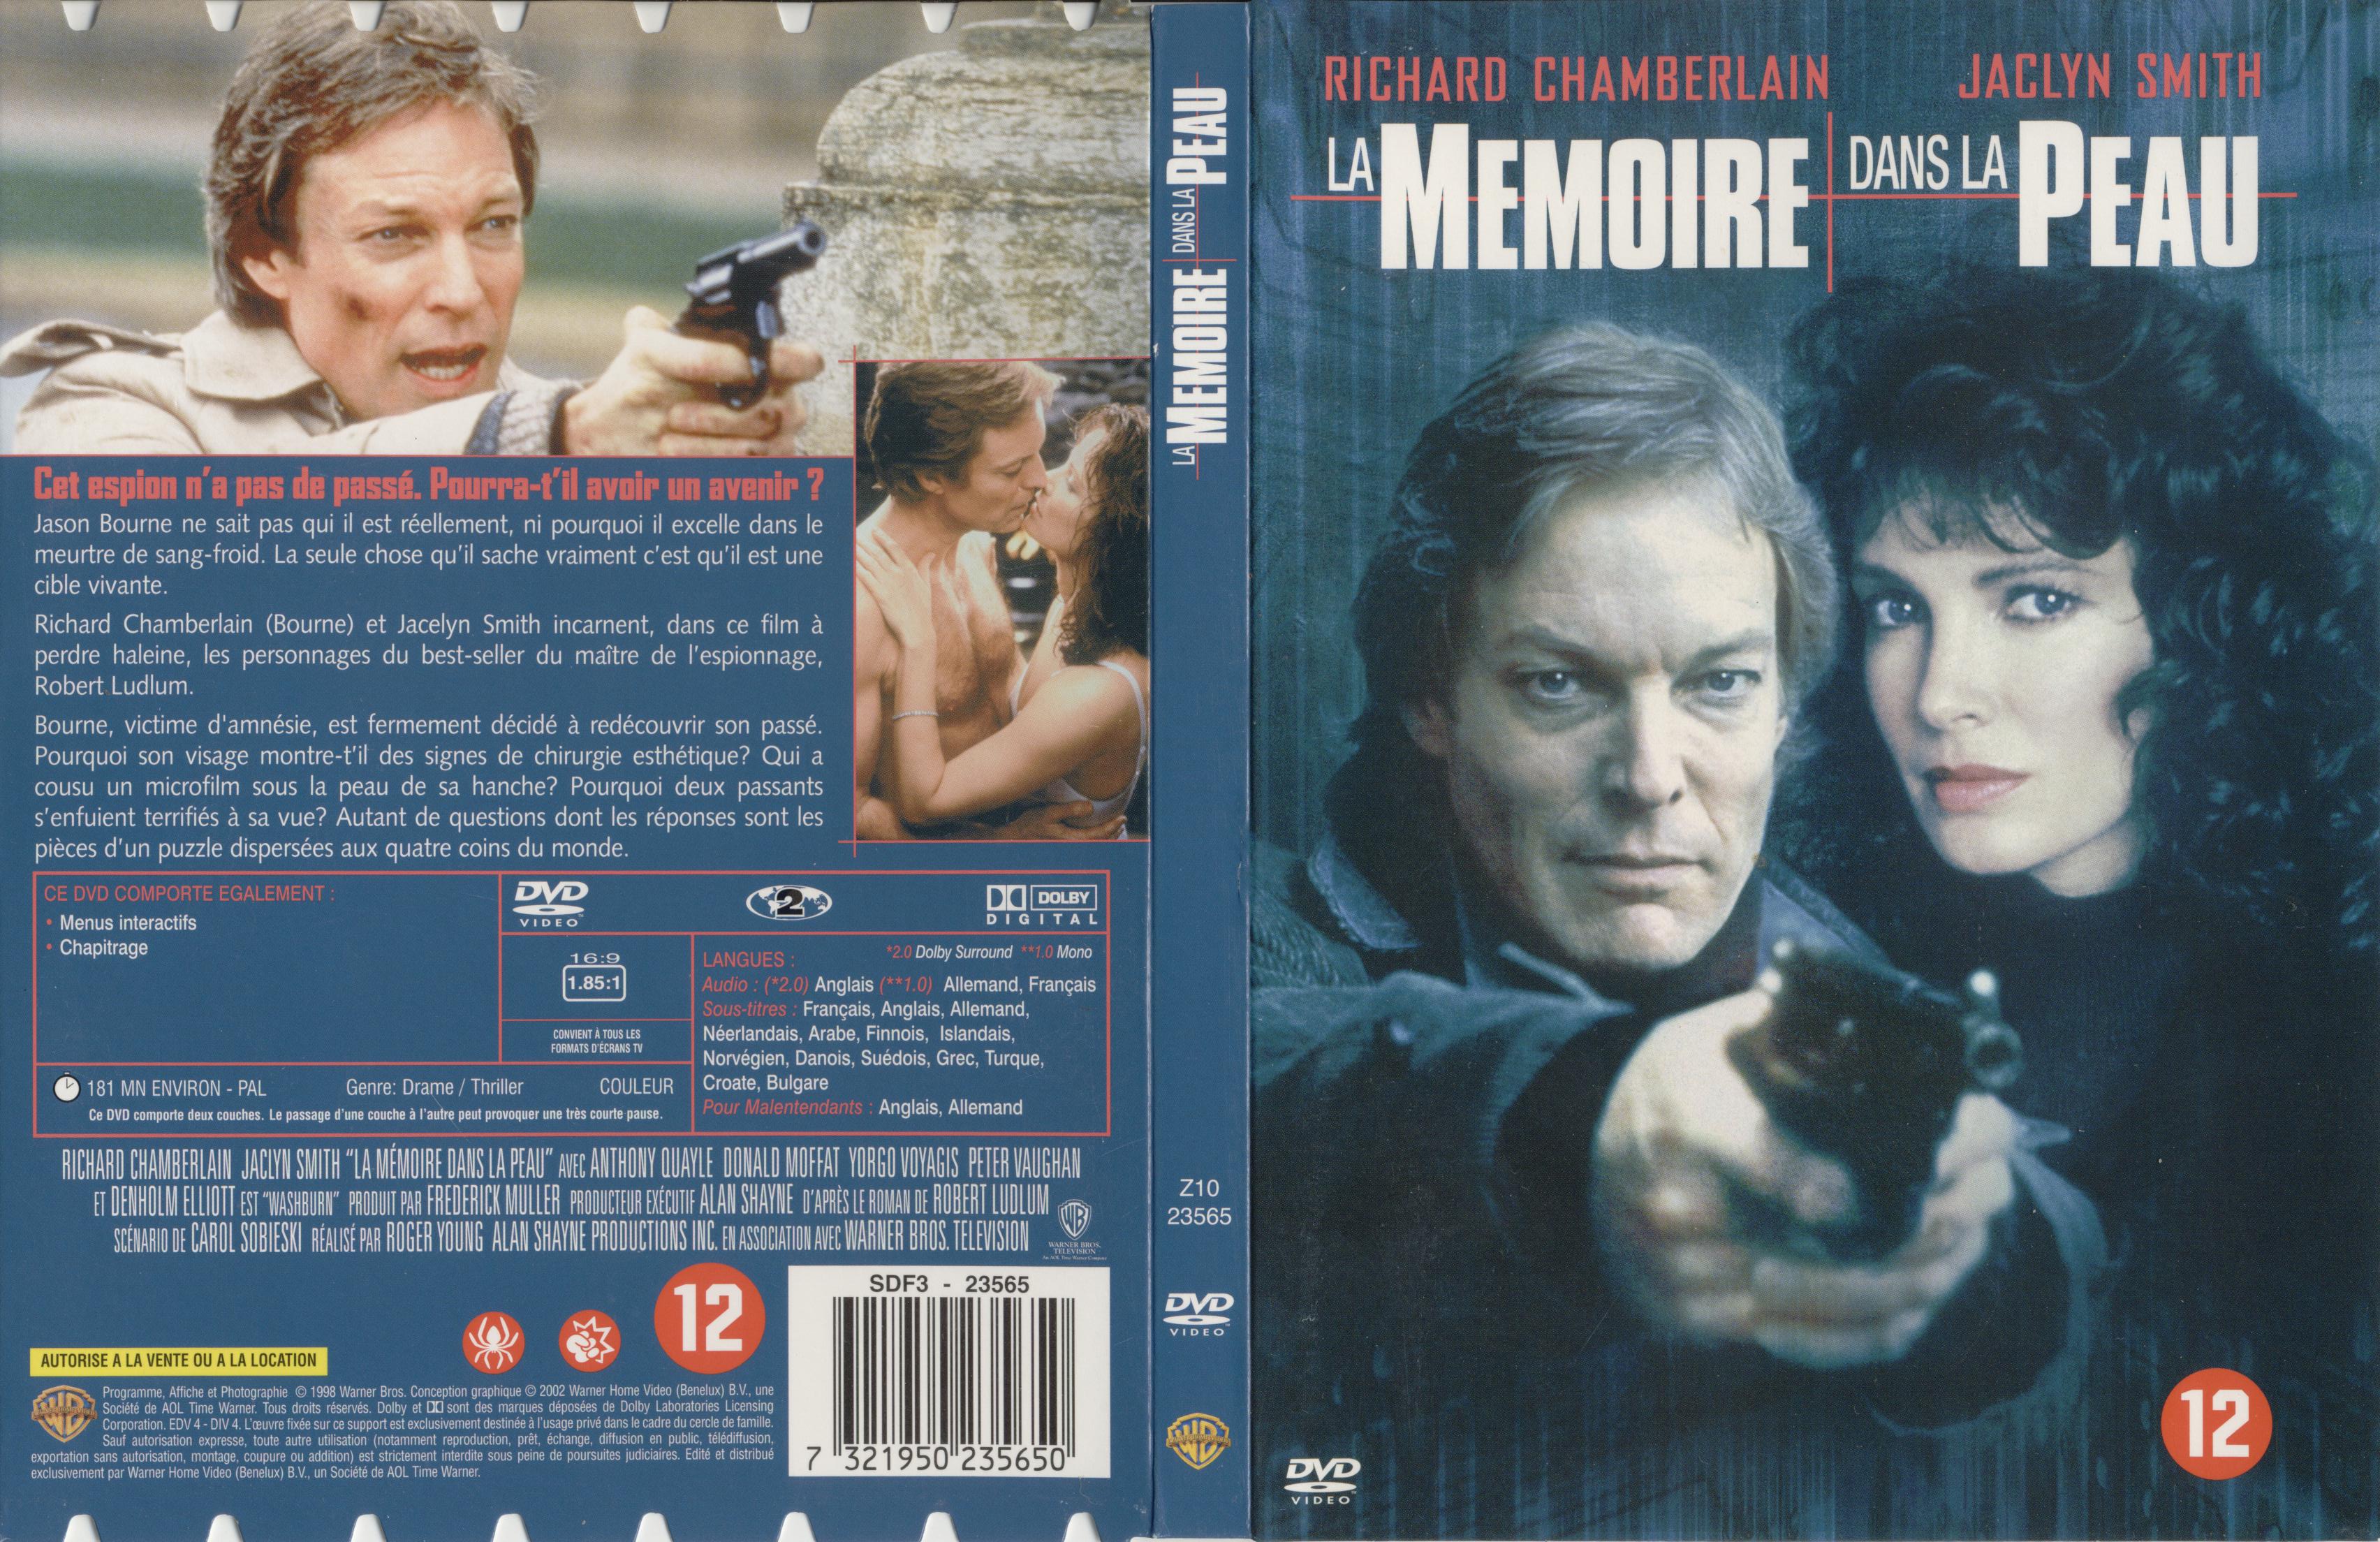 Jaquette DVD La mmoire dans la peau (1988)